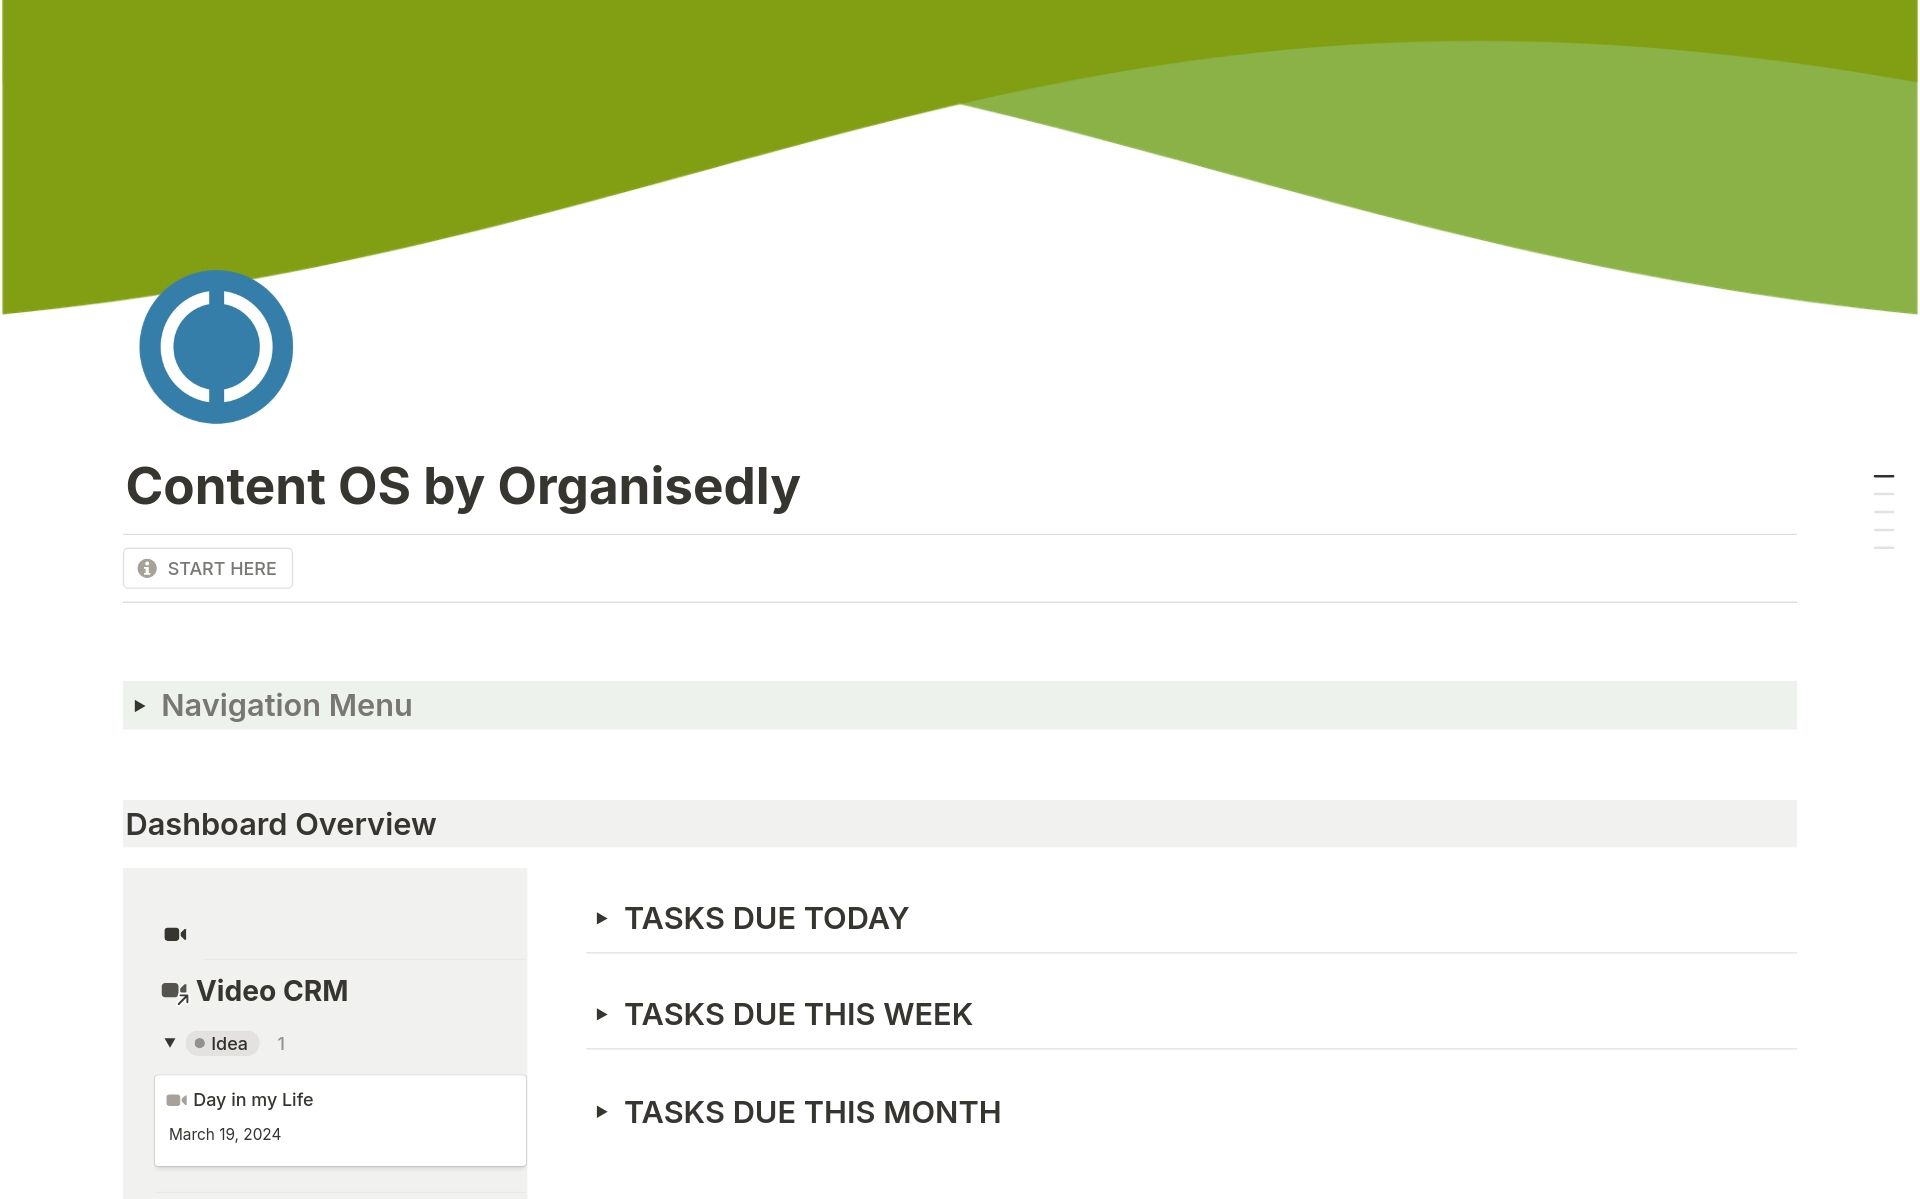 Vista previa de una plantilla para Content OS by Organisedly